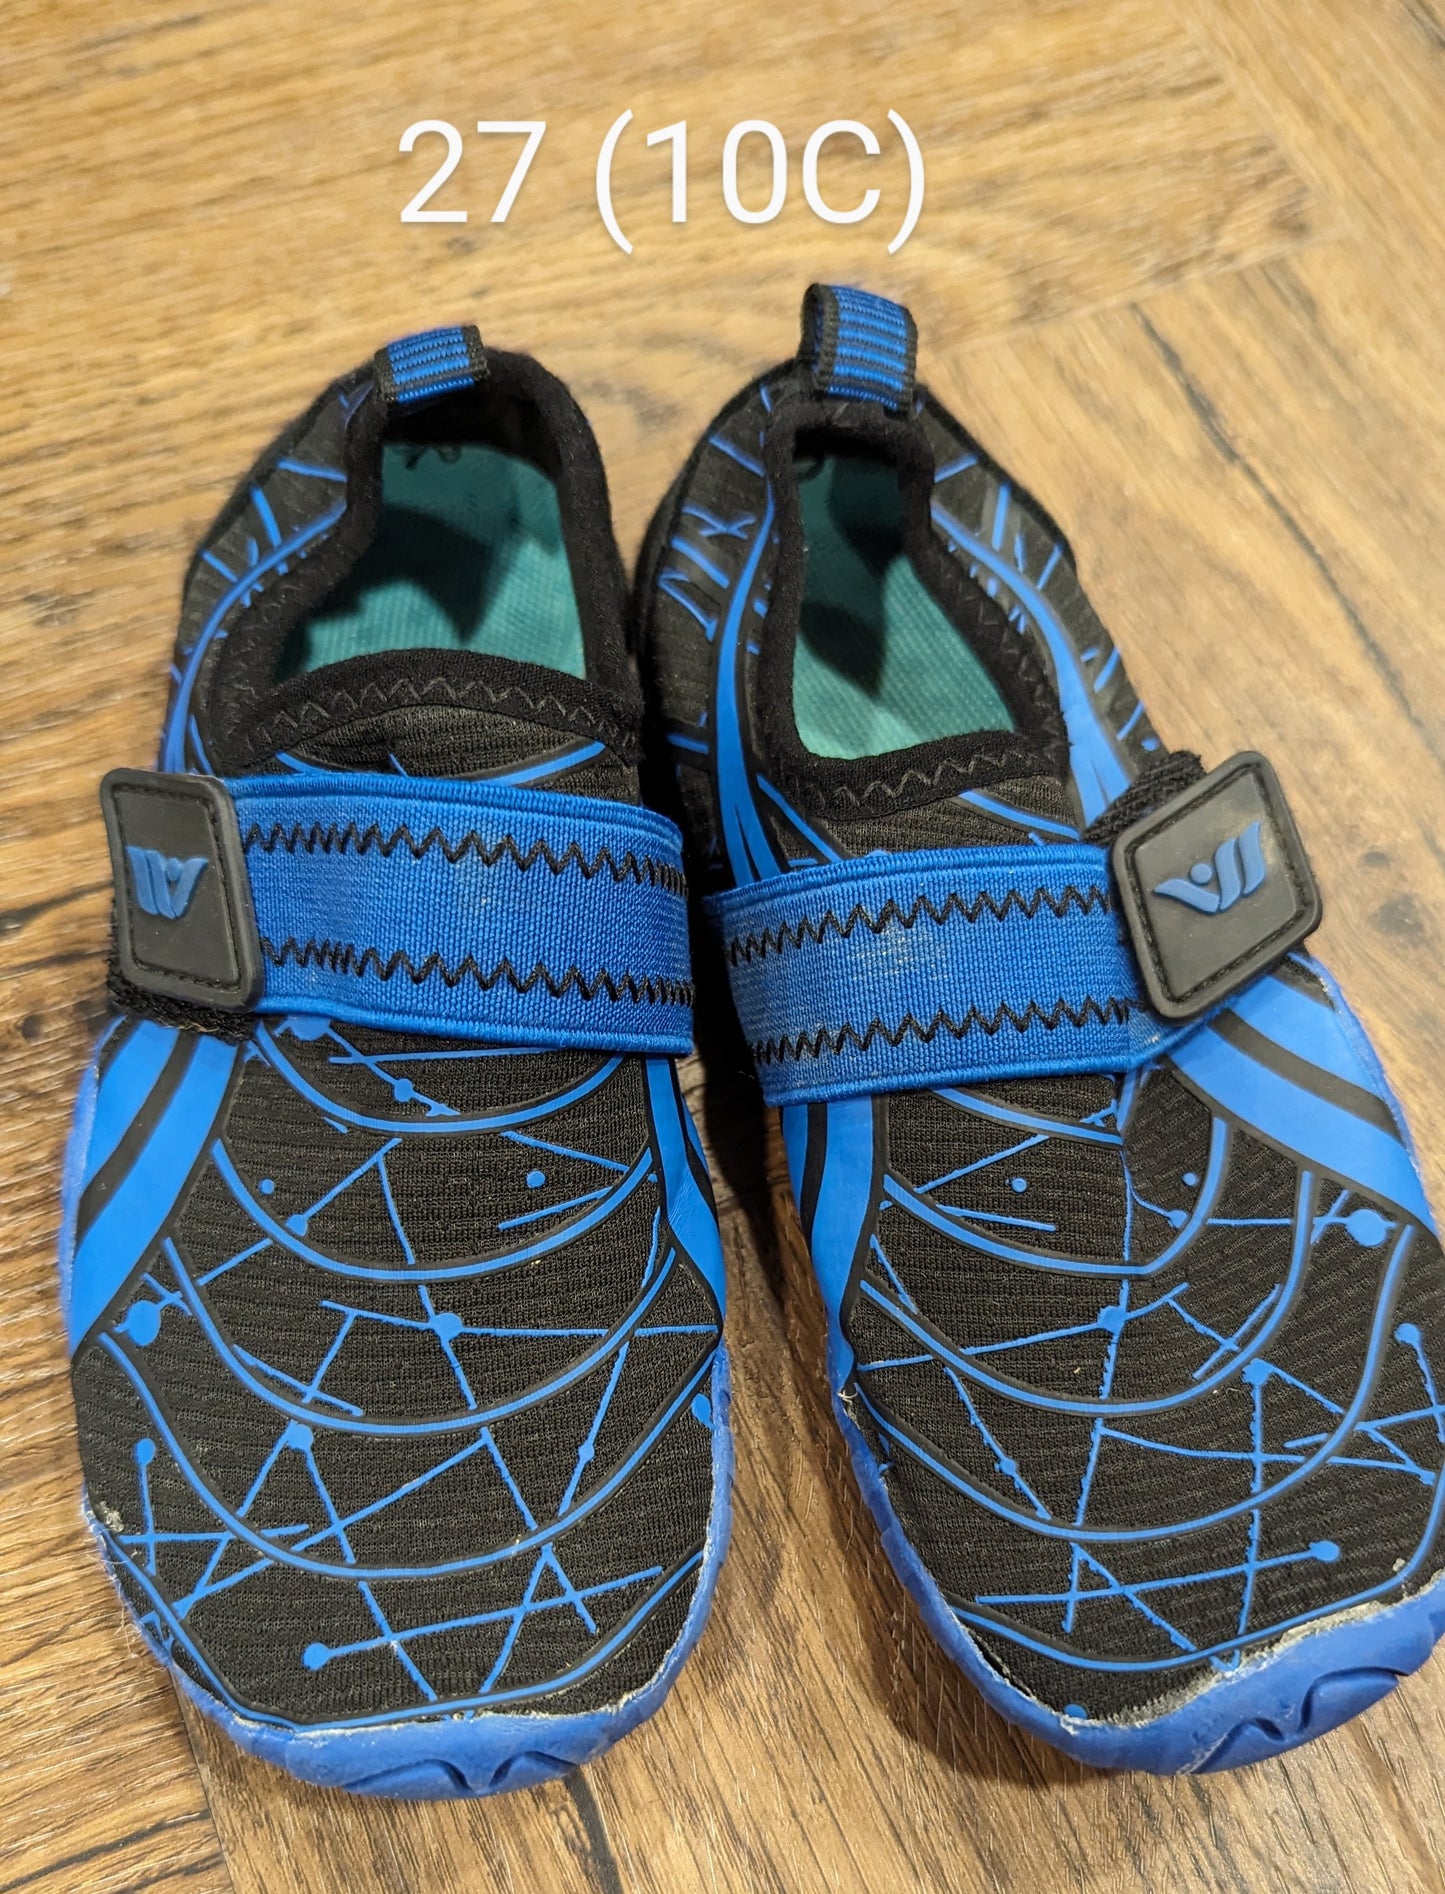 Blue/black swim shoes, 10C